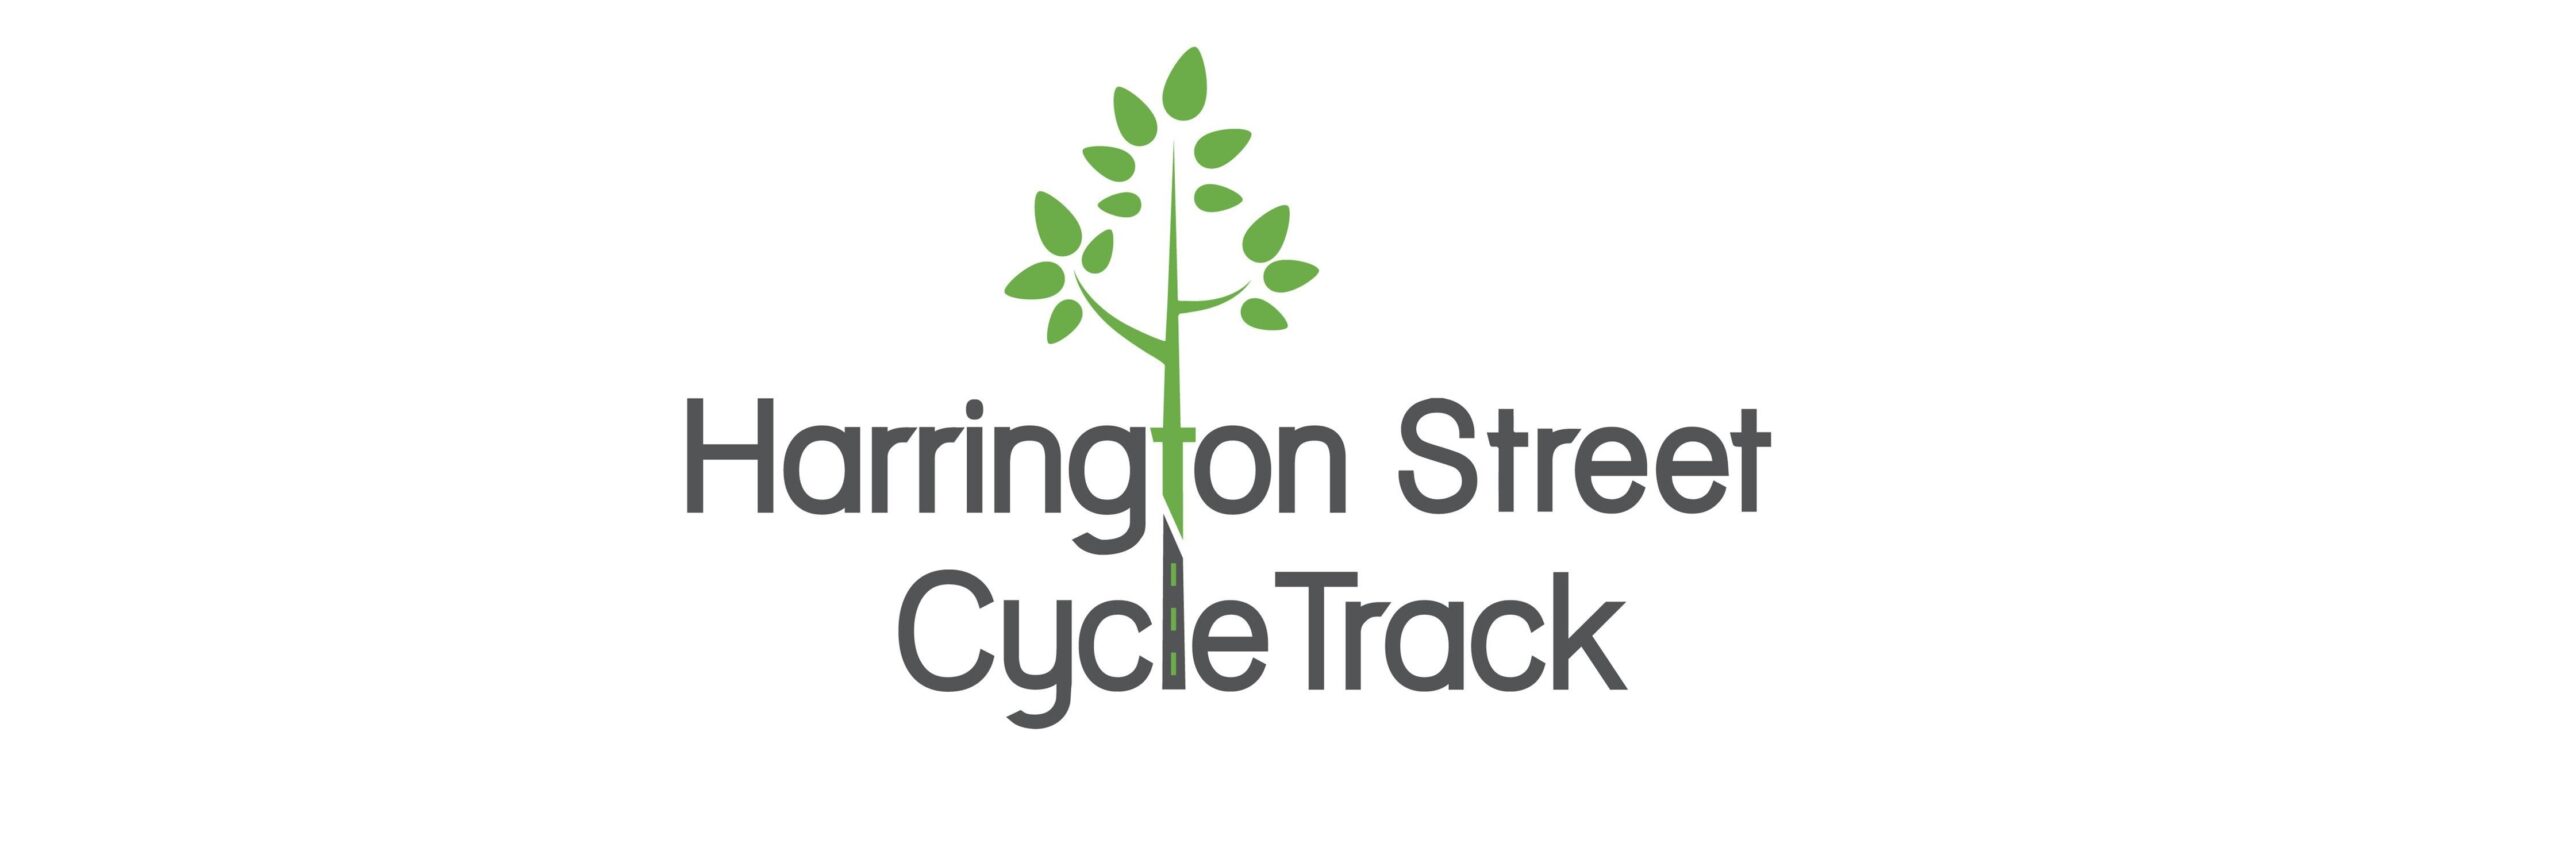 Volunteer Opportunities: Harrington St. CycleTrack Pop-up Weekend